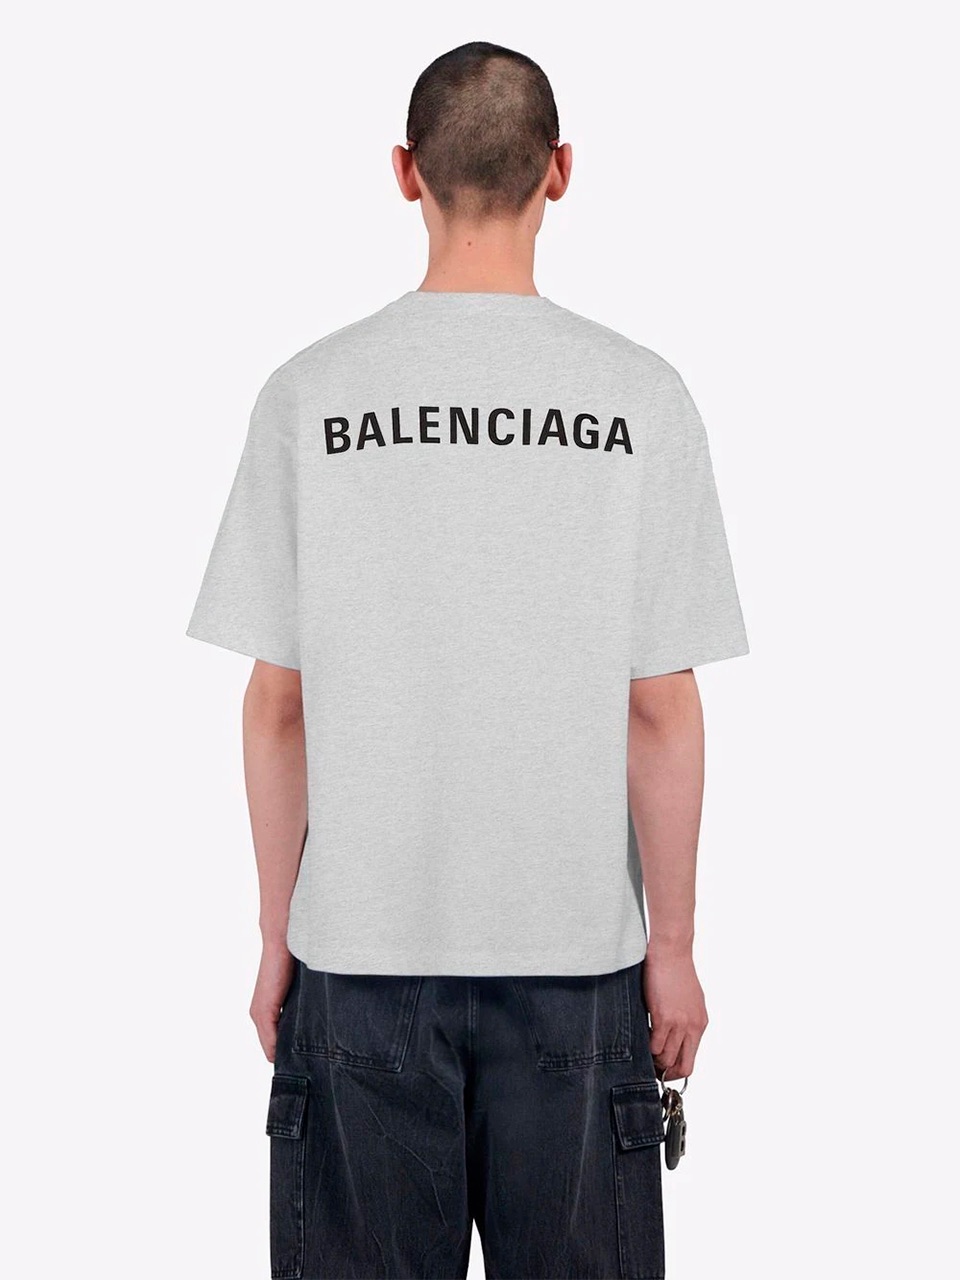 Imagem de: Camiseta Balenciaga Cinza com Logo